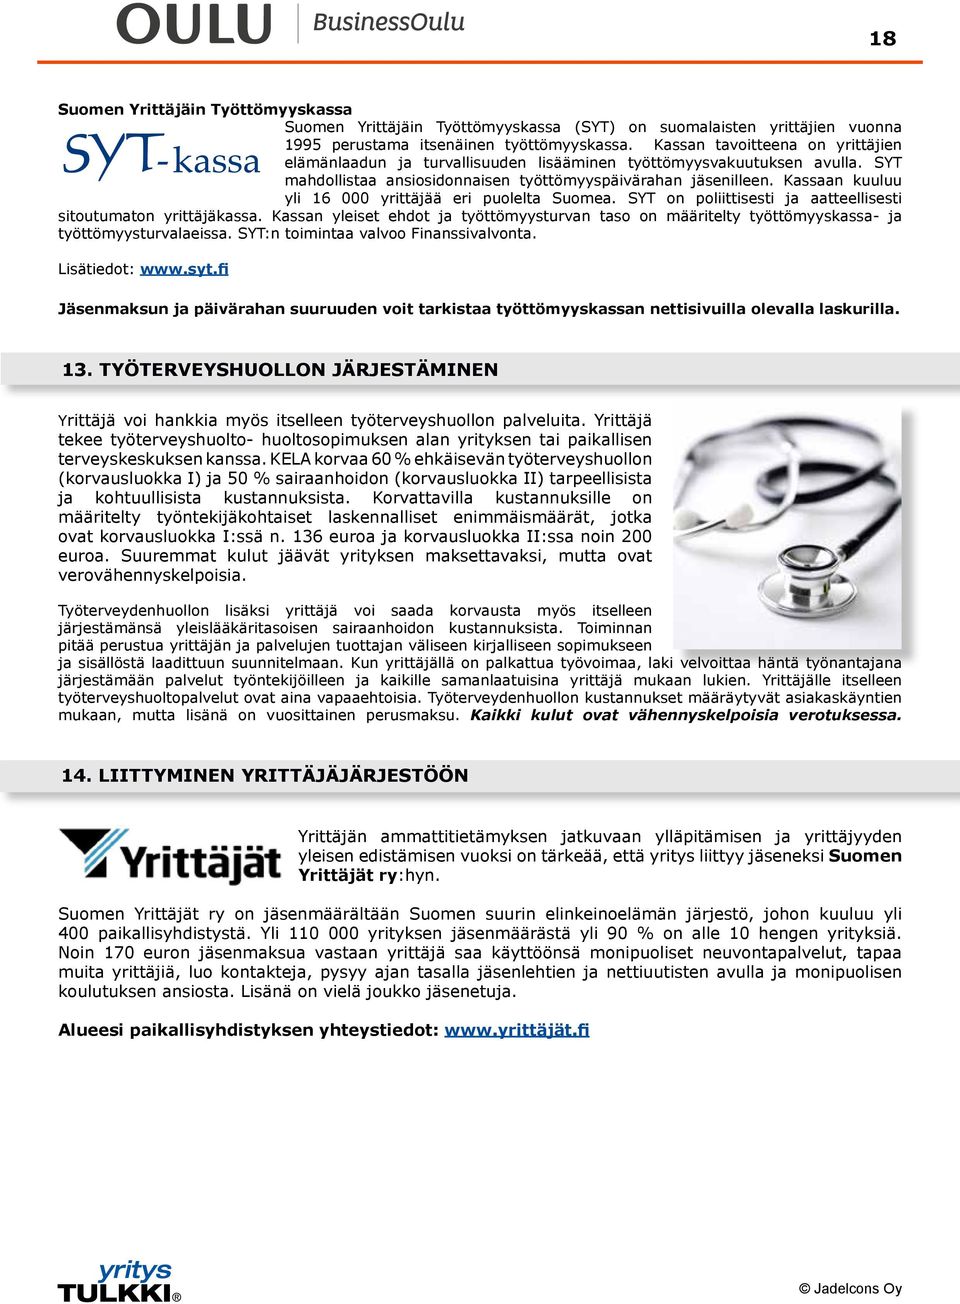 Kassaan kuuluu yli 16 000 yrittäjää eri puolelta Suomea. SYT on poliittisesti ja aatteellisesti sitoutumaton yrittäjäkassa.